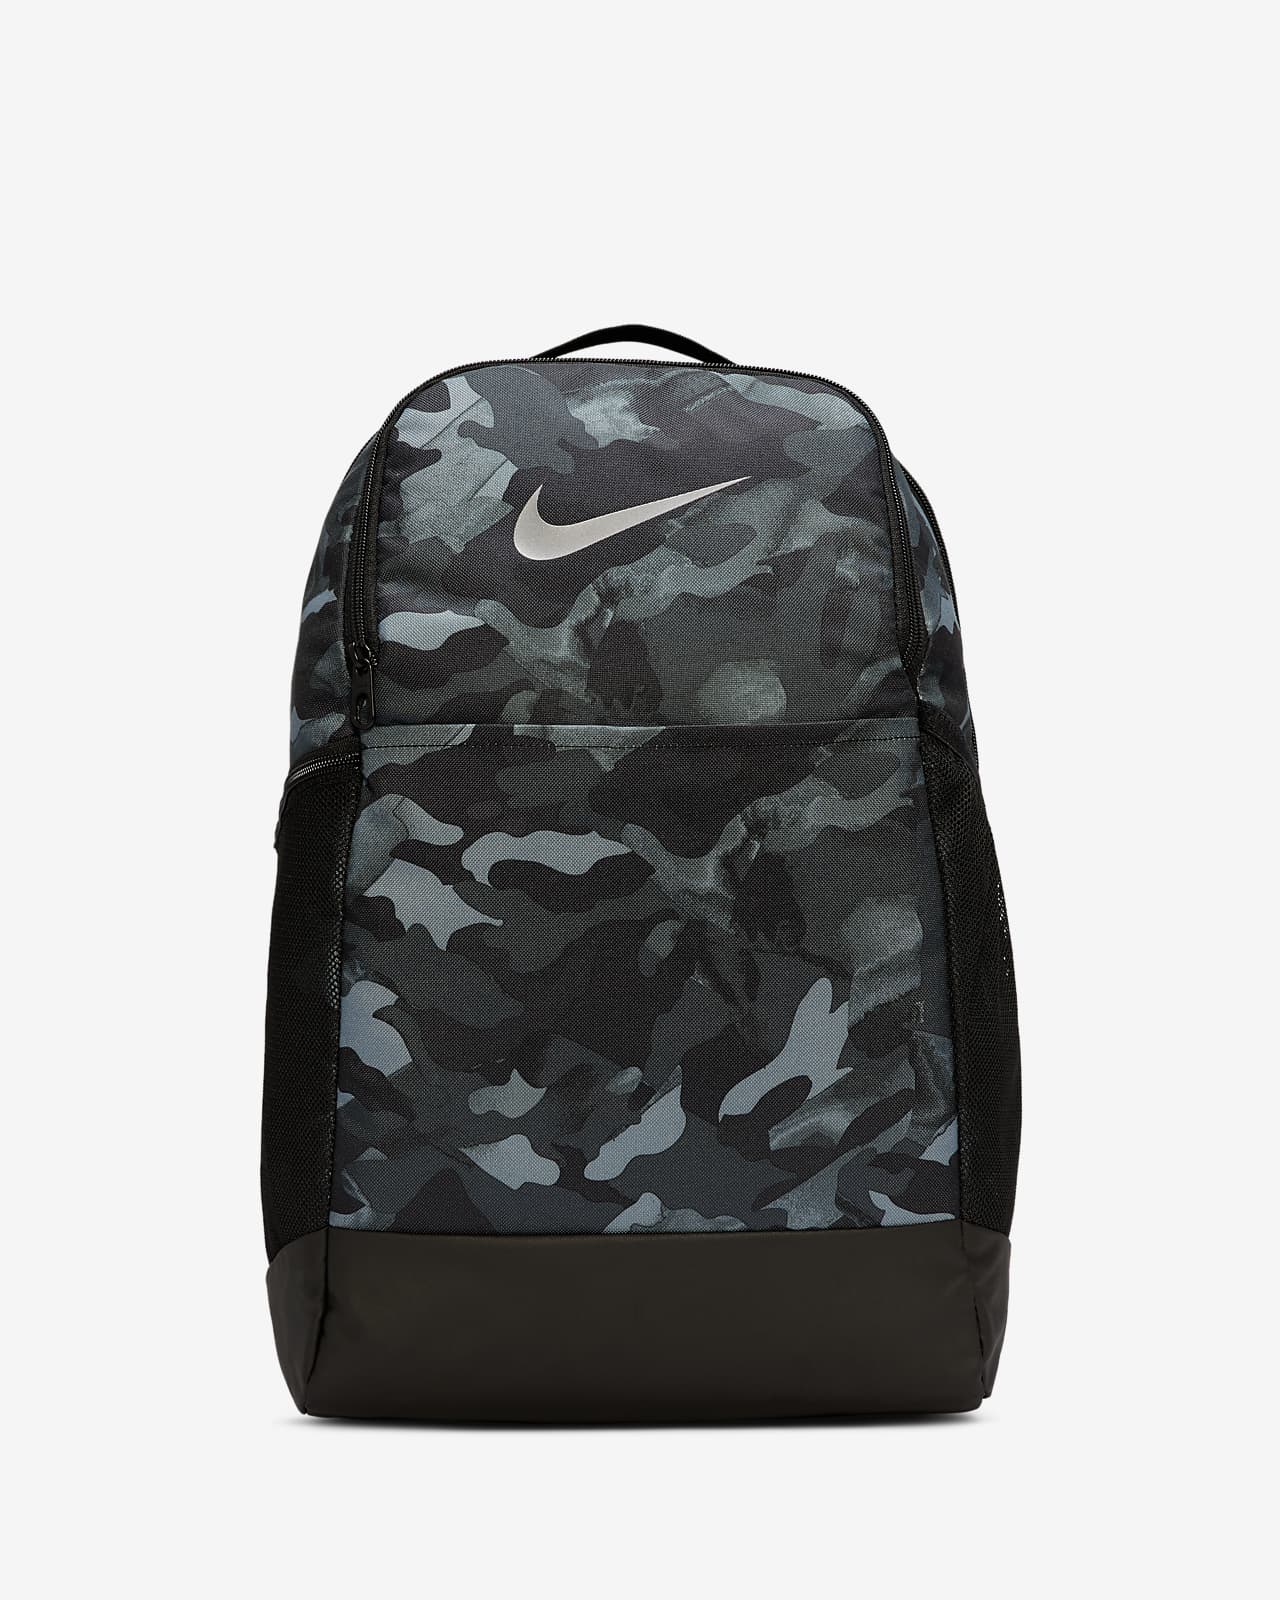 nike brasilia backpack grey